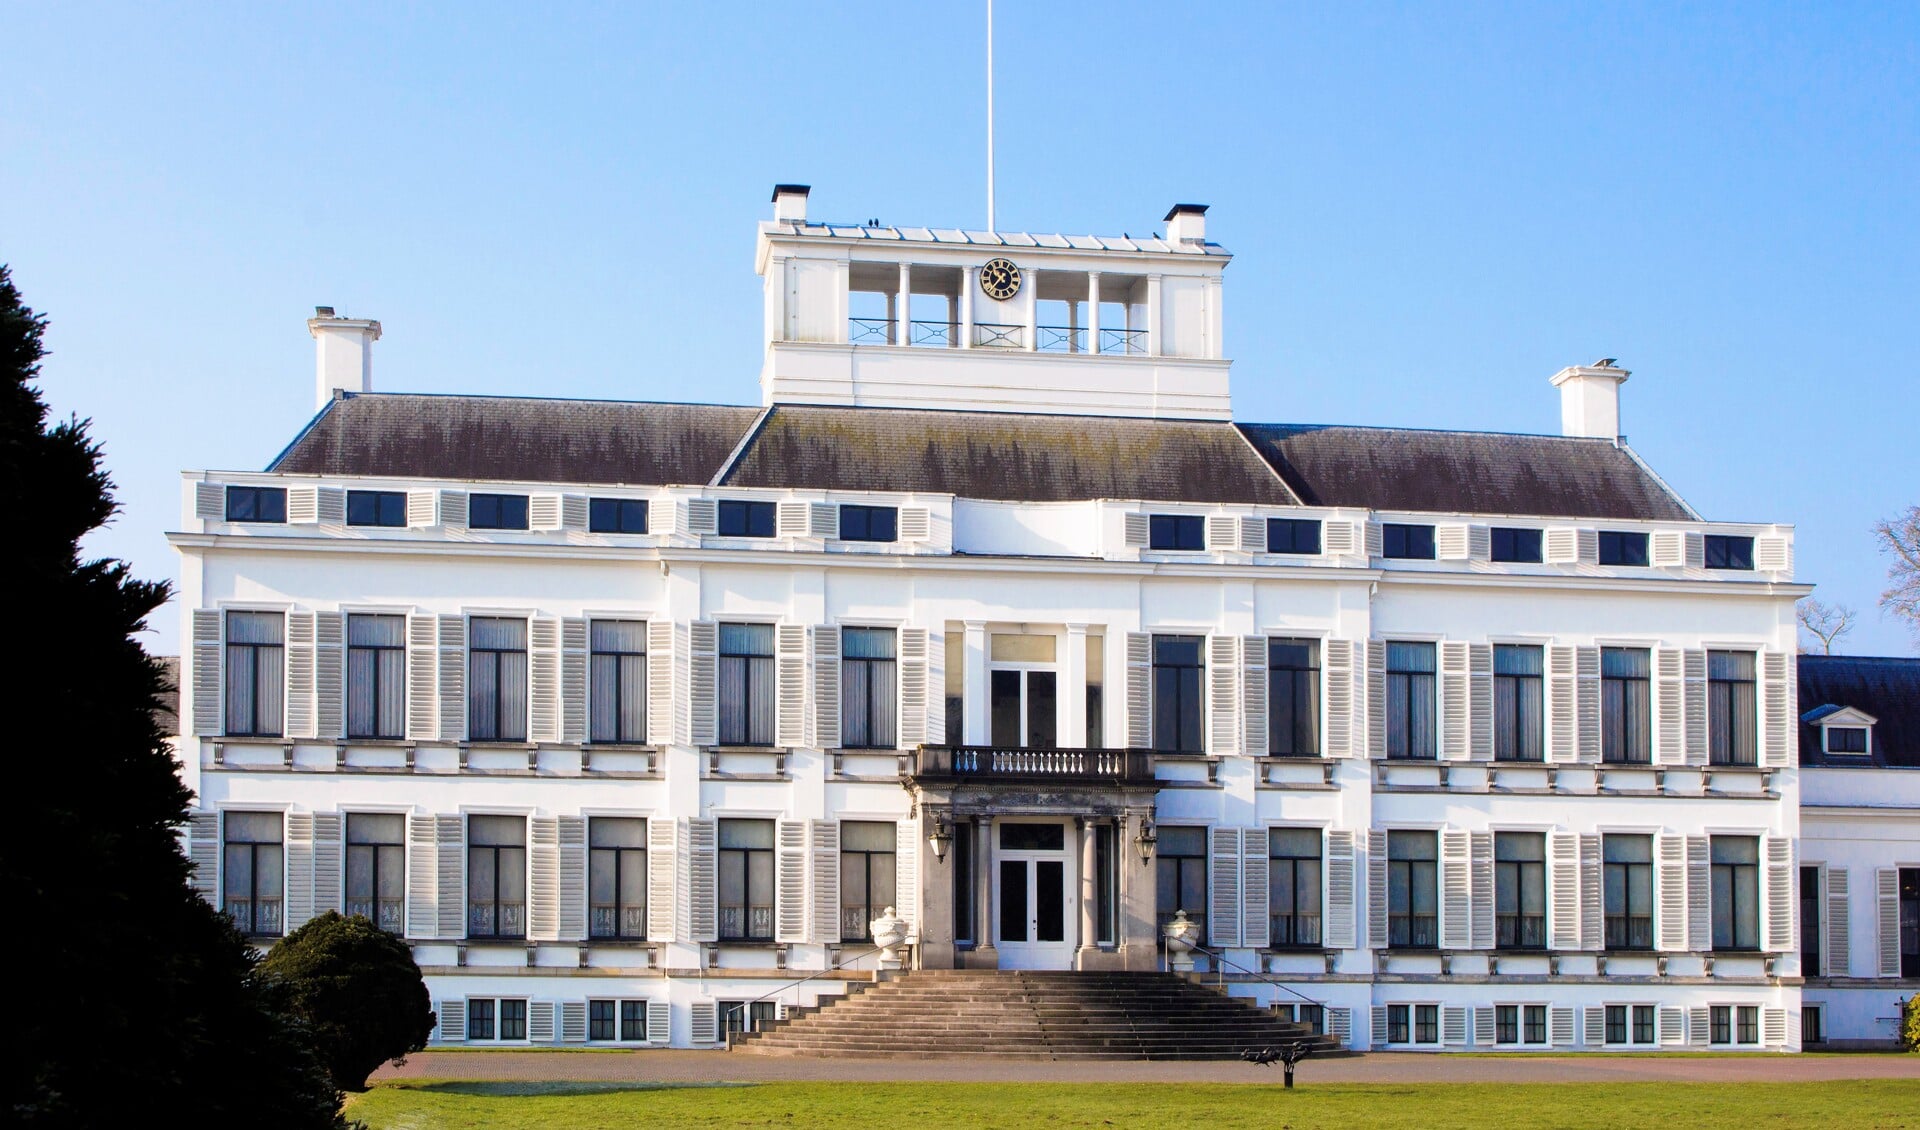 Het aanzicht van paleis Soestdijk wordt niet langer ontsierd door auto's.